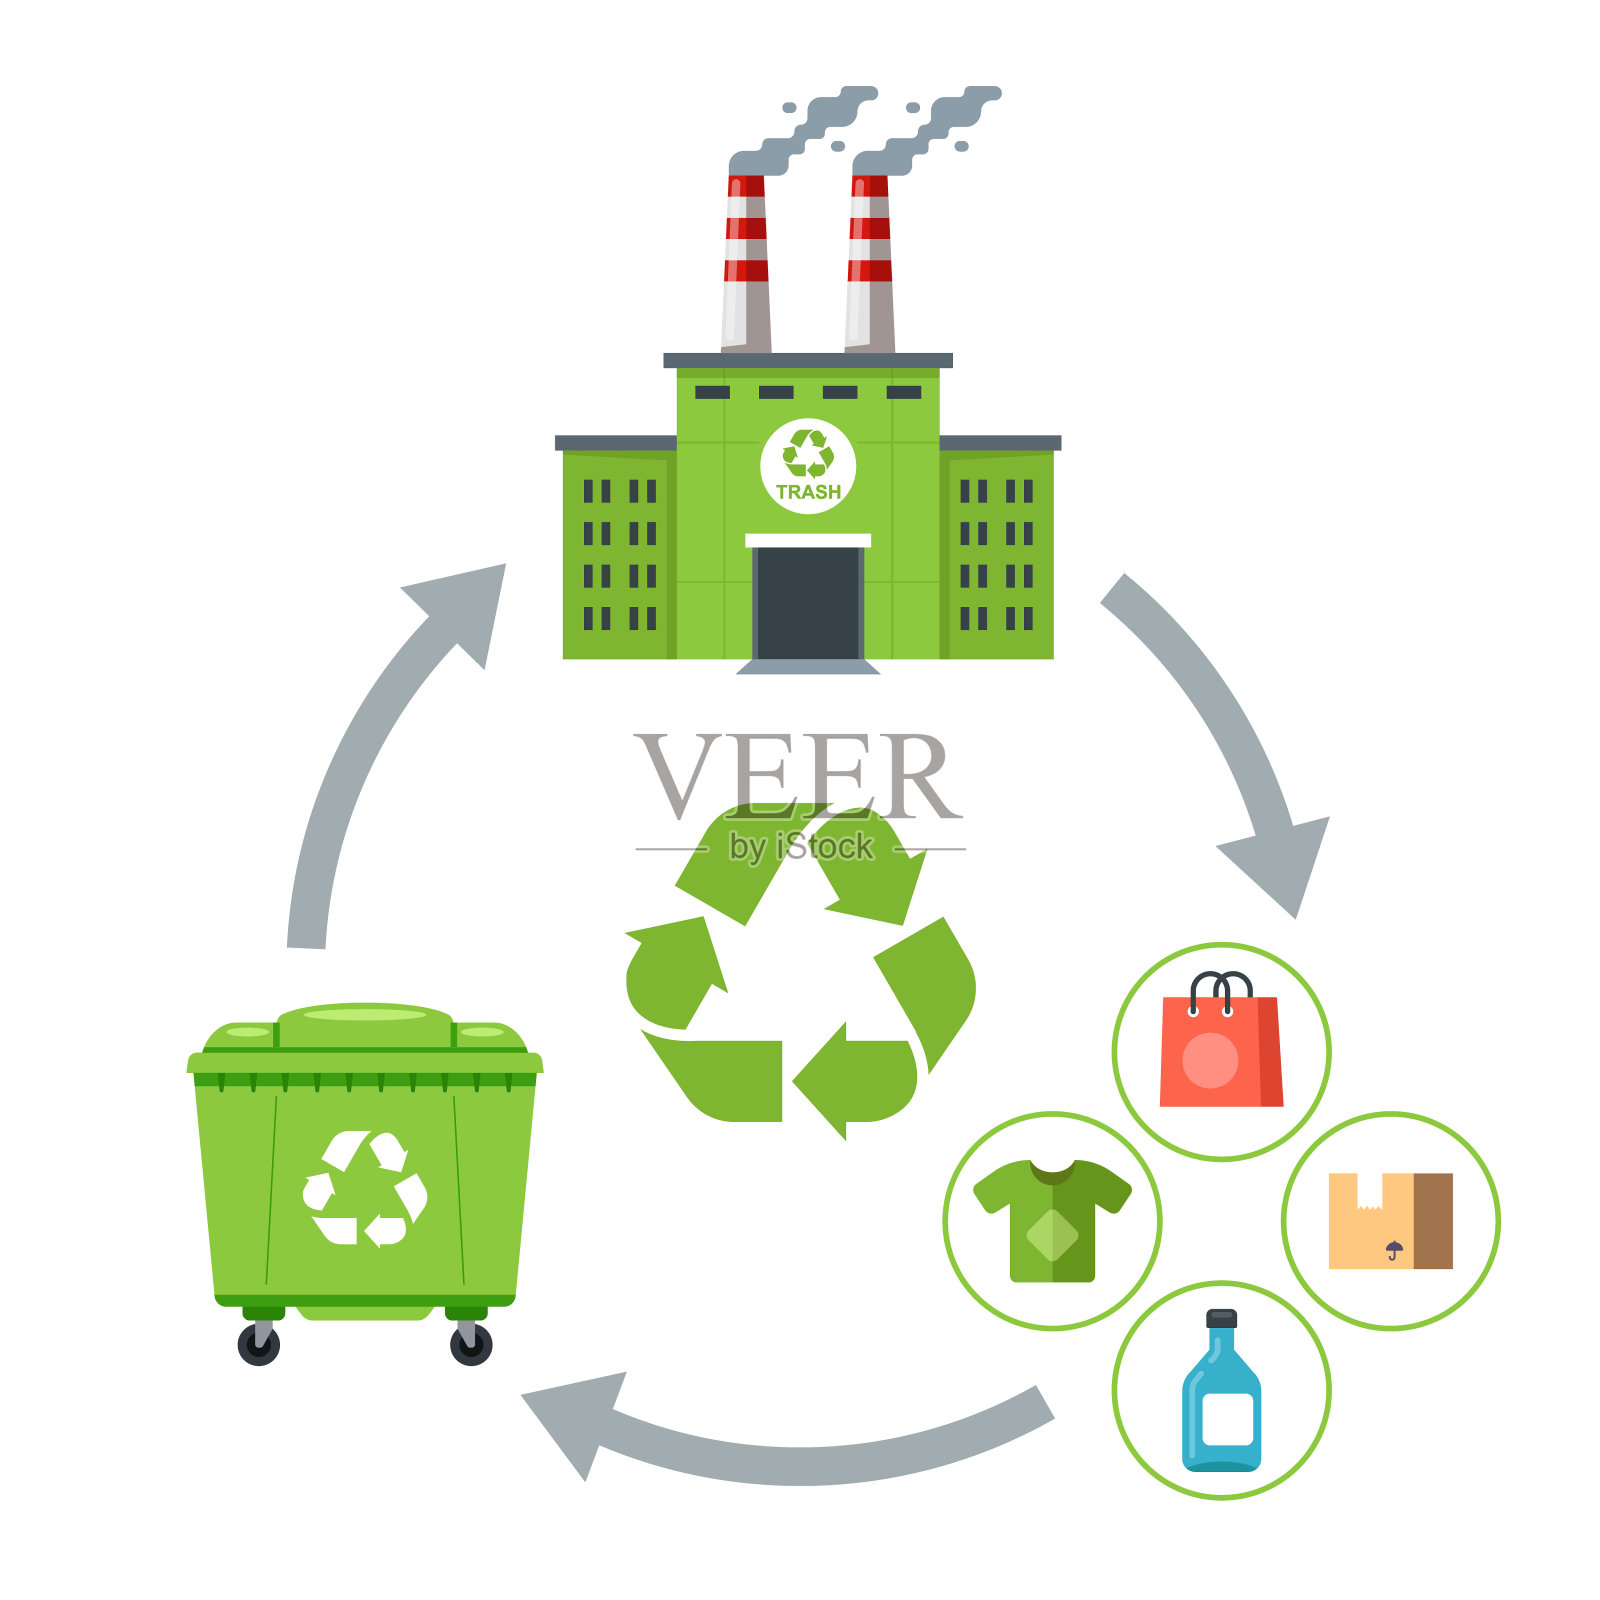 为生产商品而重复使用垃圾。废物循环设计元素图片